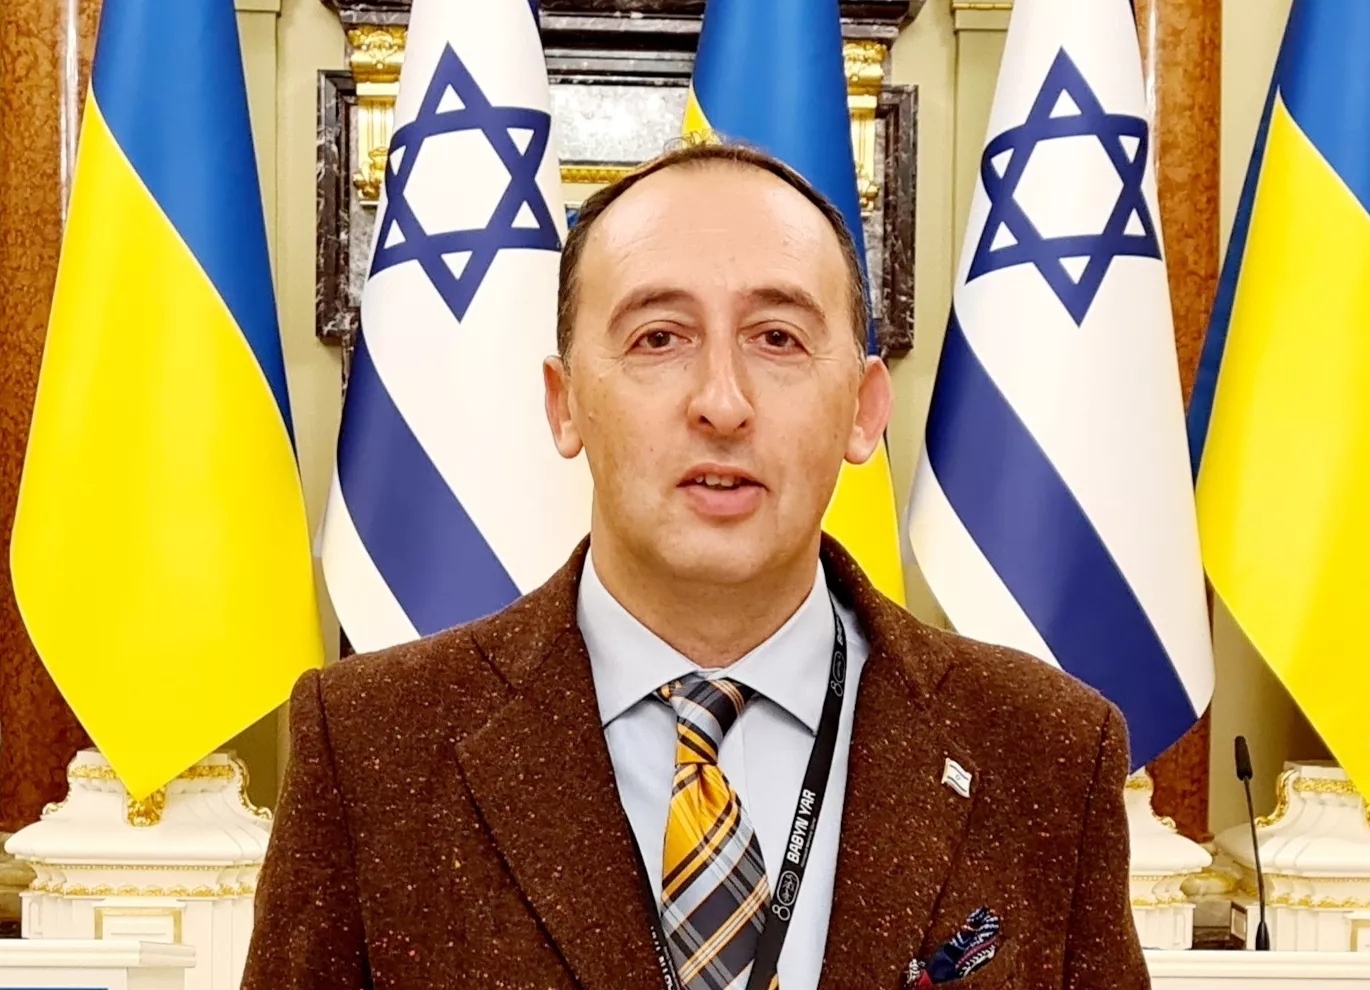 Шимон Бриман: "Руководство Израиля проводит совещания о предоставлении Украине помощи в военной сфере". Фото: Facebook